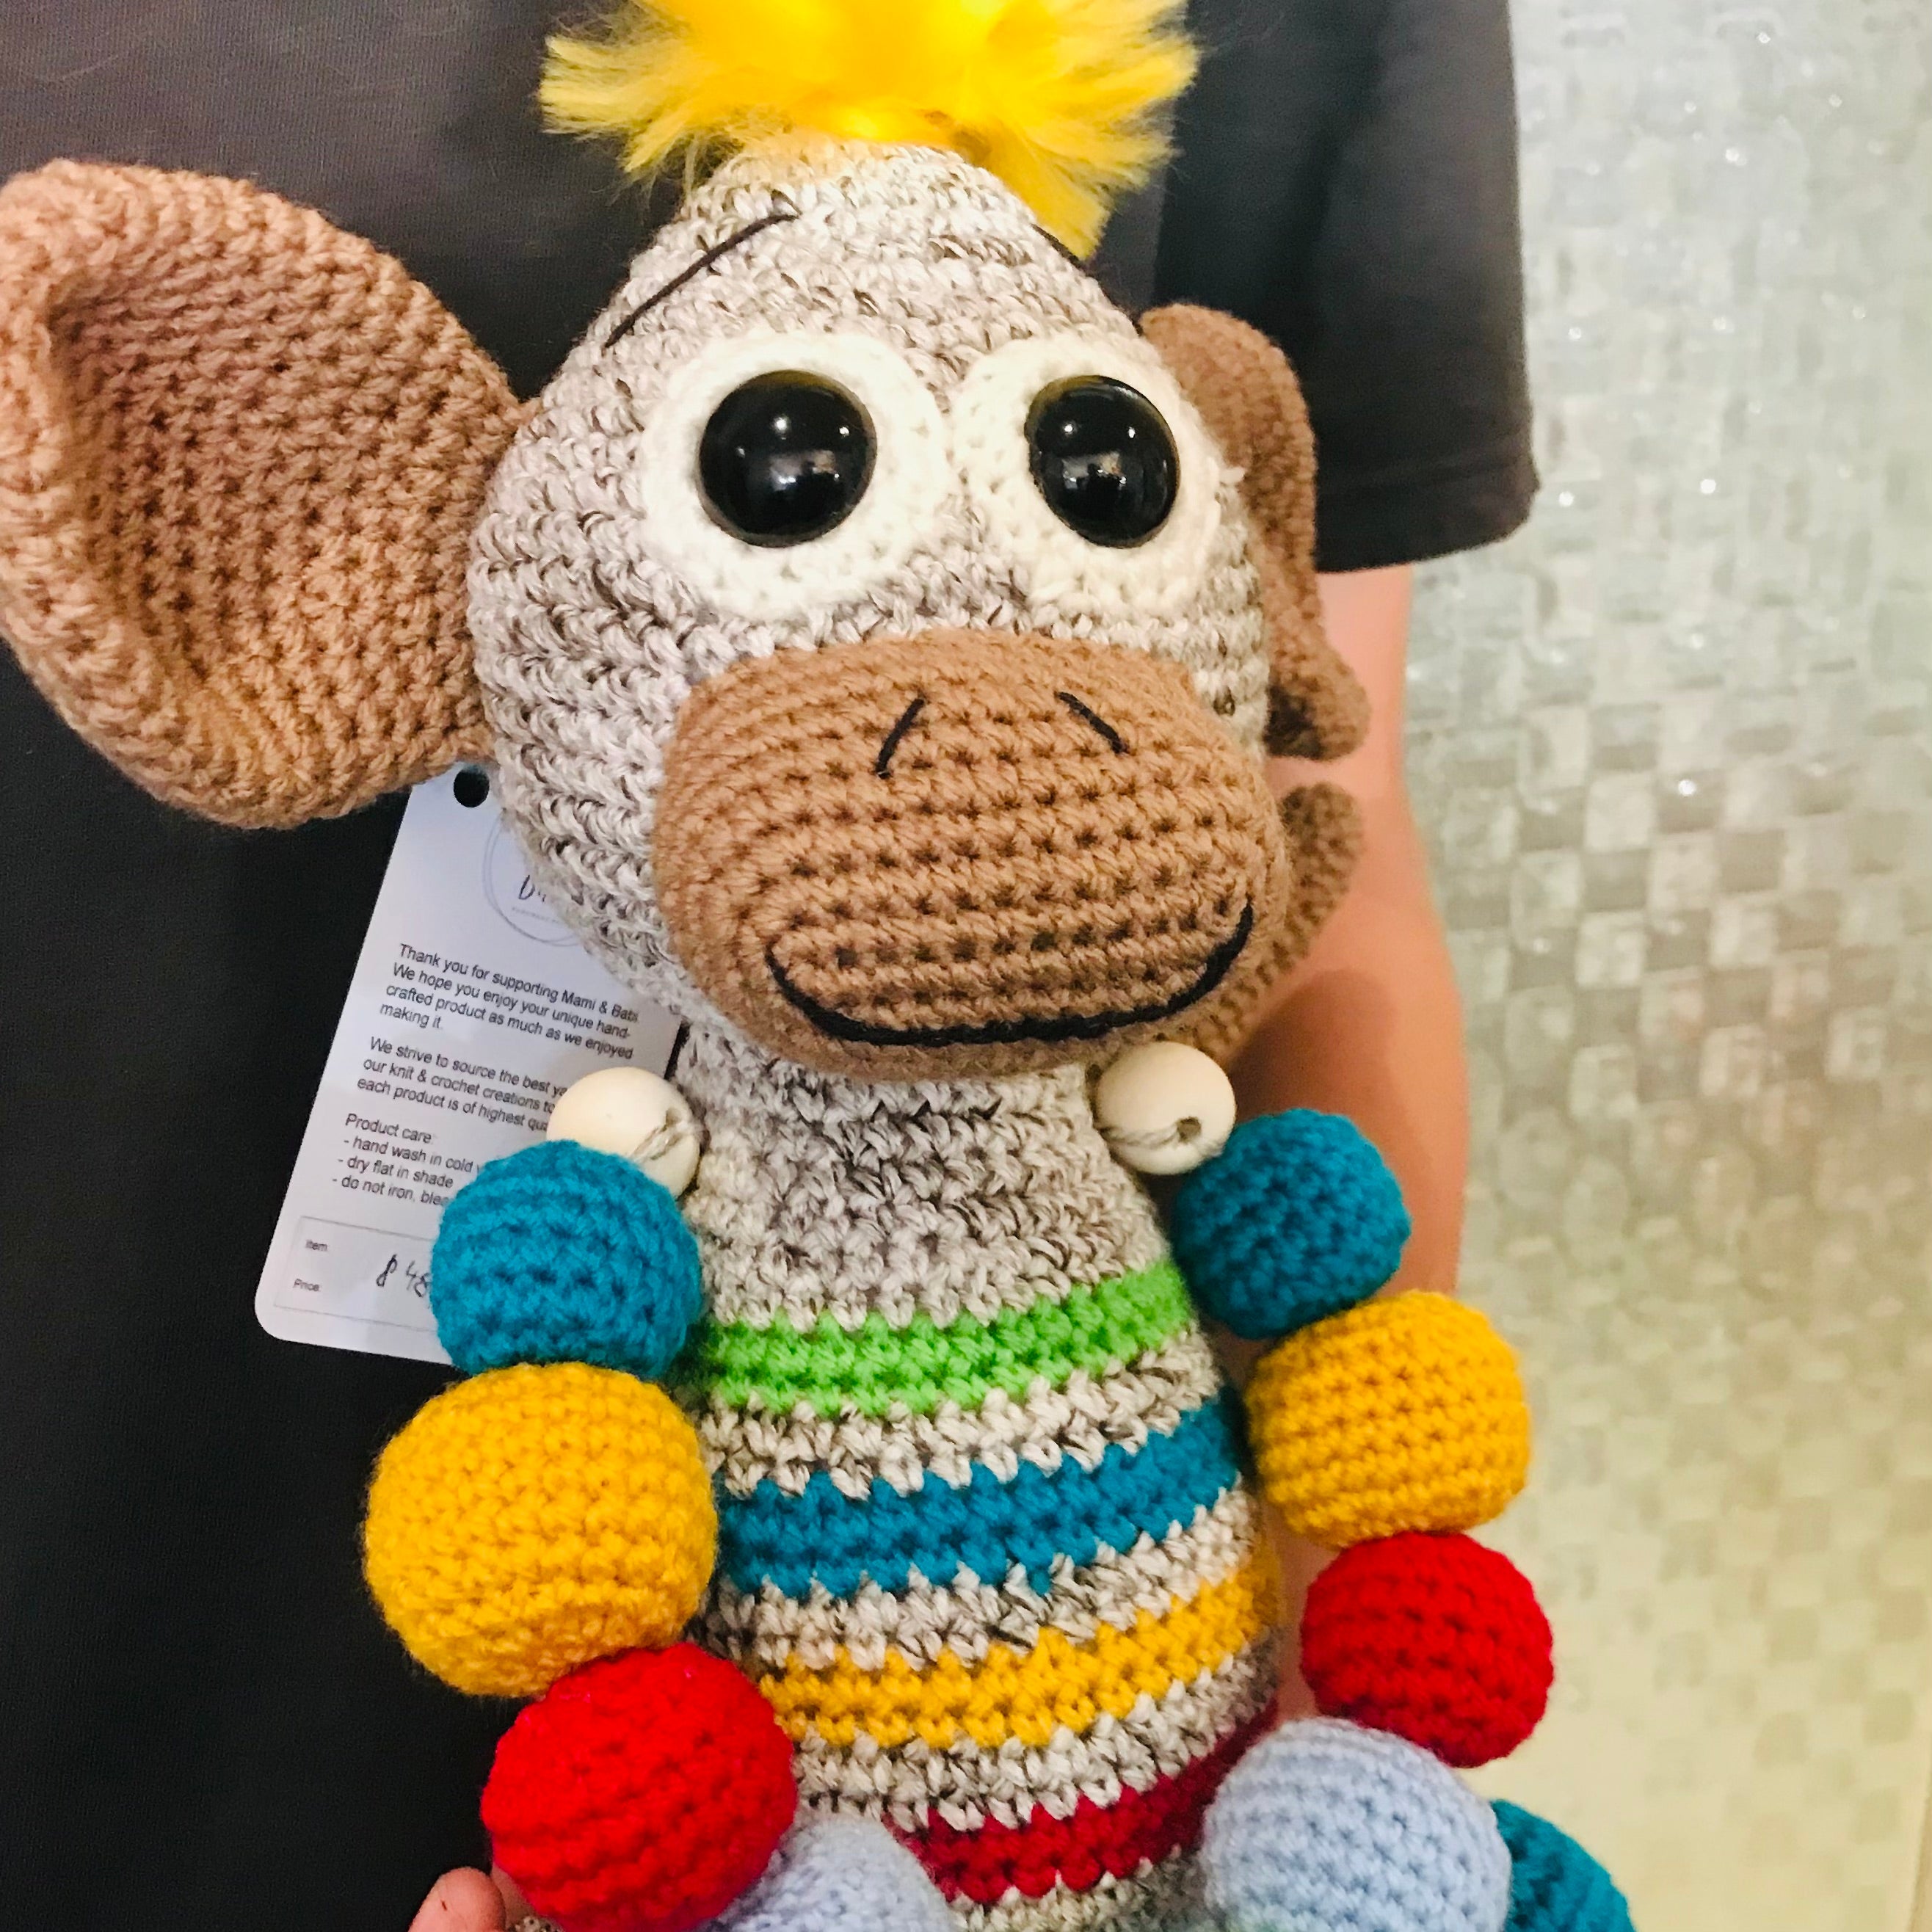 Crochet Monkey Toy